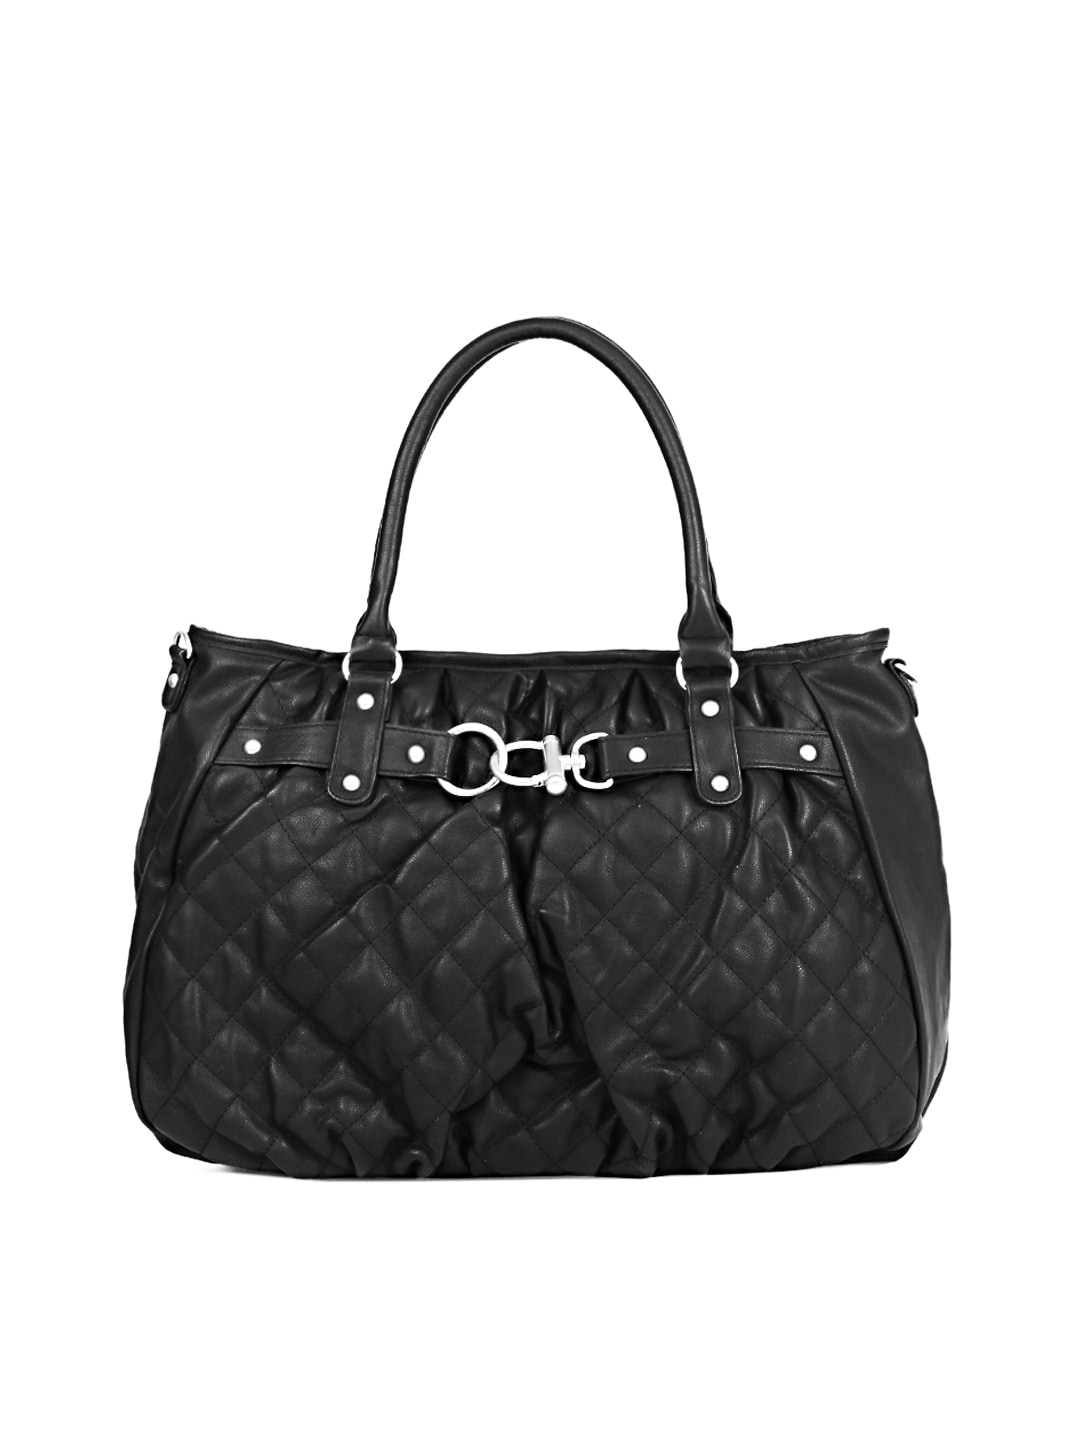 Pieces Women Black Handbag